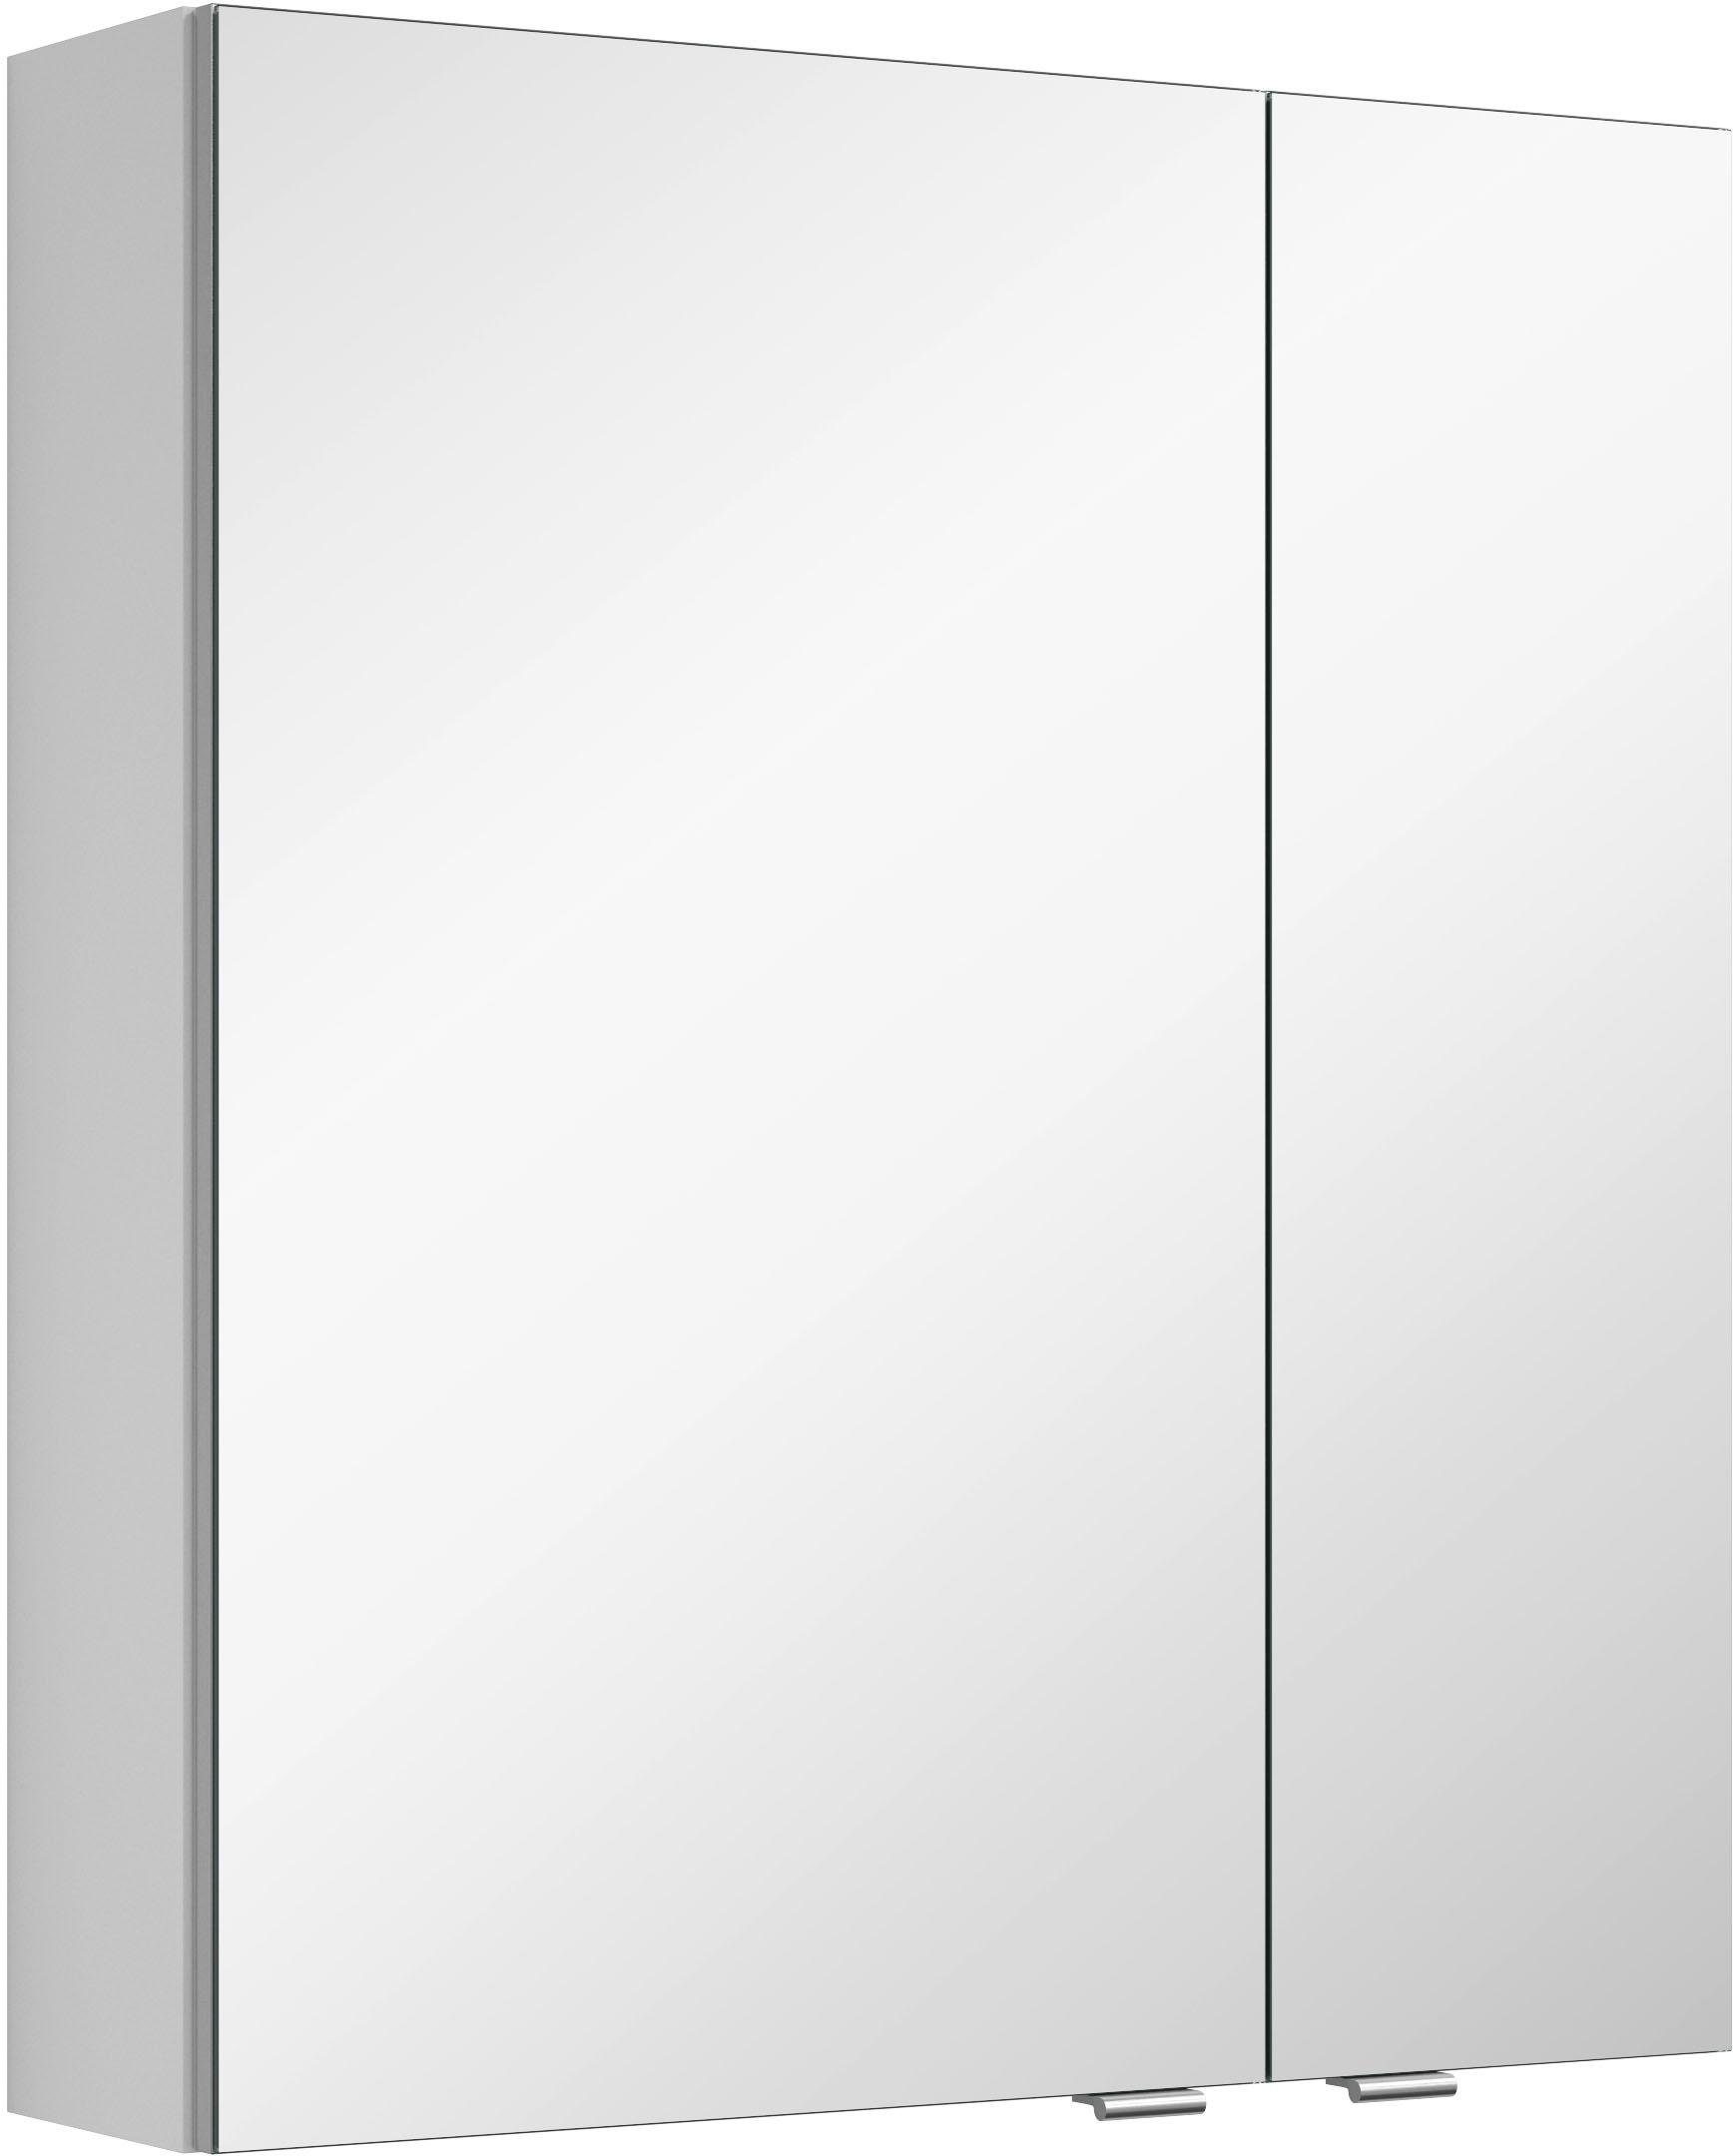 MARLIN Spiegelkast 3980 met dubbelzijdig spiegelende deuren, voorgemonteerd